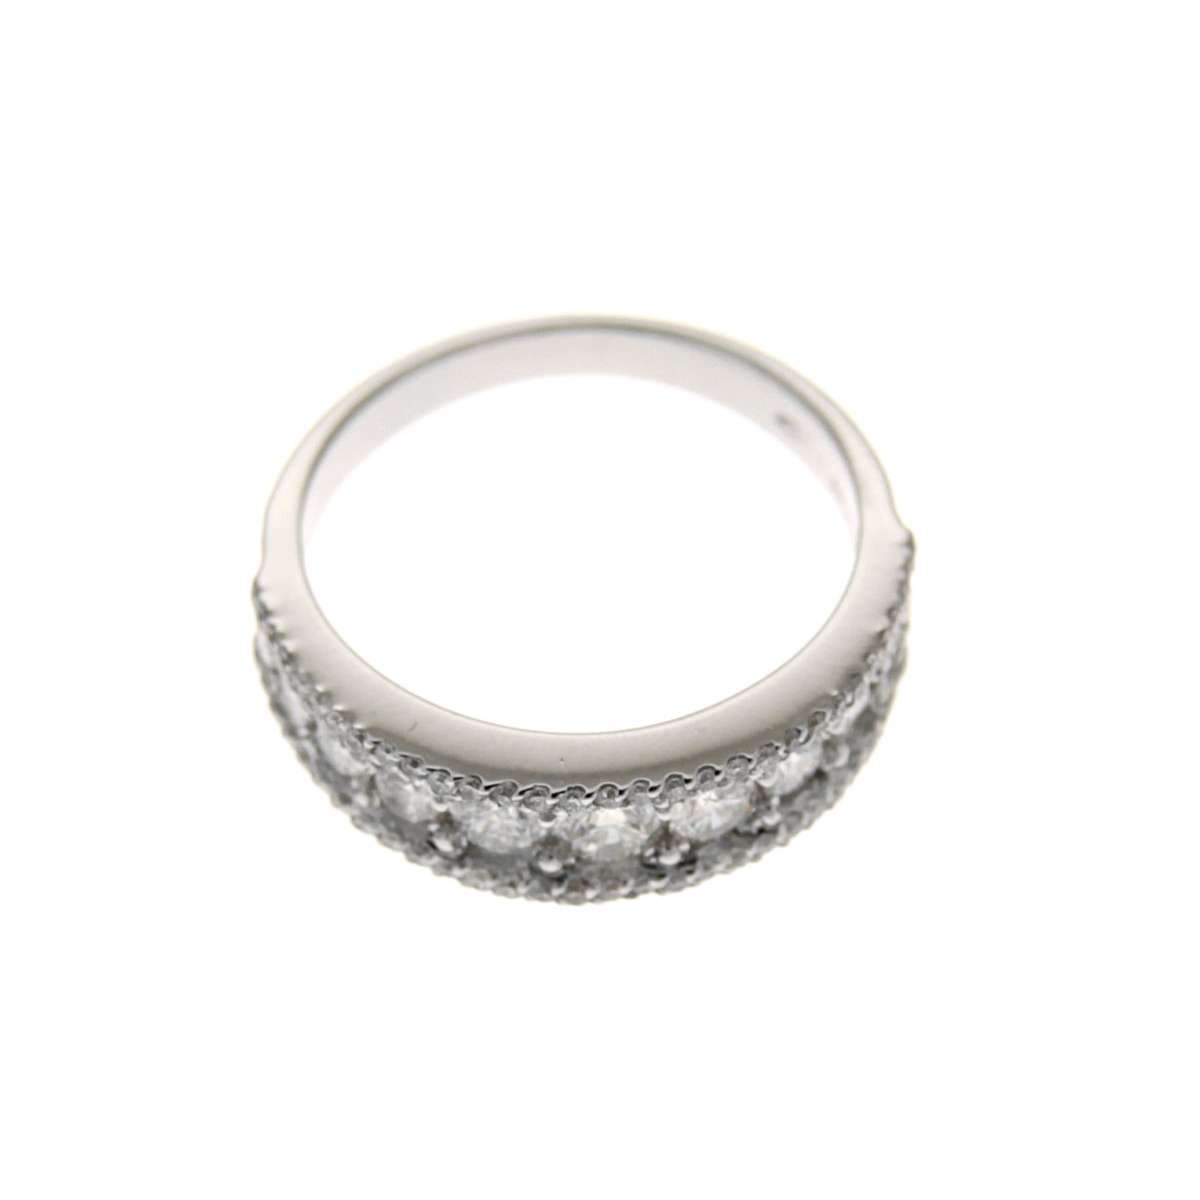 1.00 carat diamond ring G-VS1